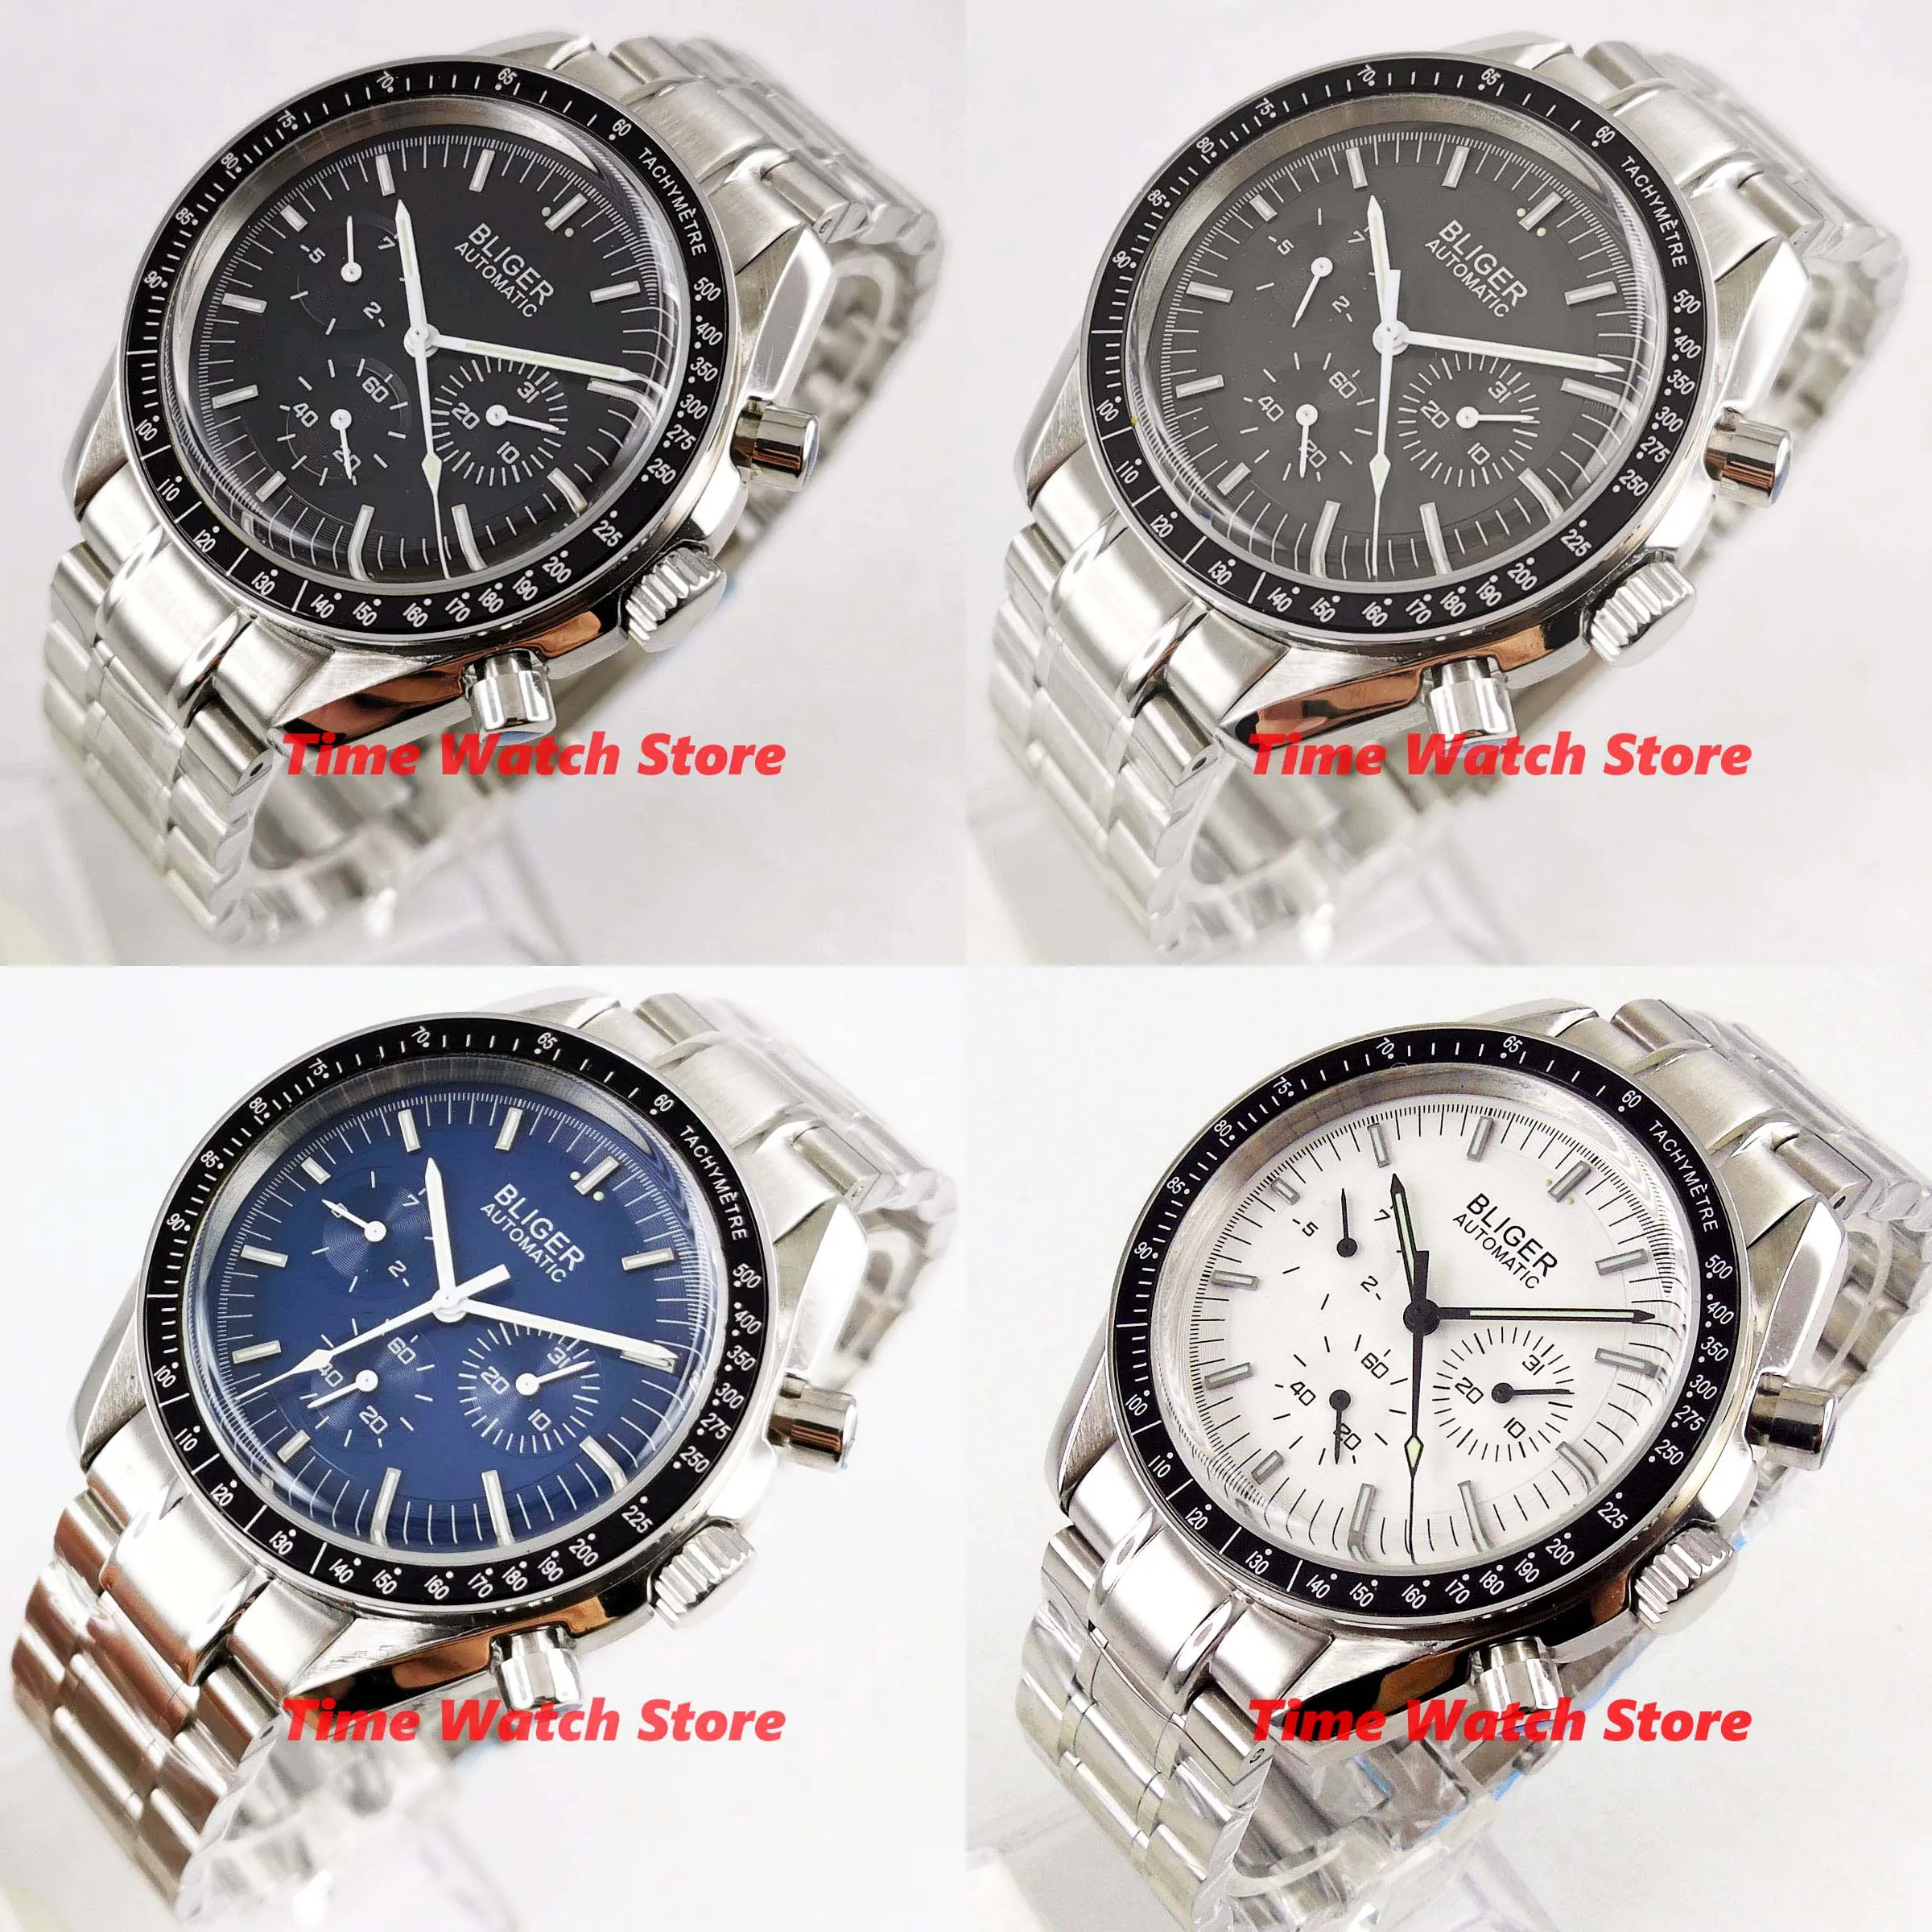 40 мм механические мужские часы Bliger, водонепроницаемые, браслет из нержавеющей стали, черный, синий, белый циферблат, многофункциональные, Авто наручные 301/306